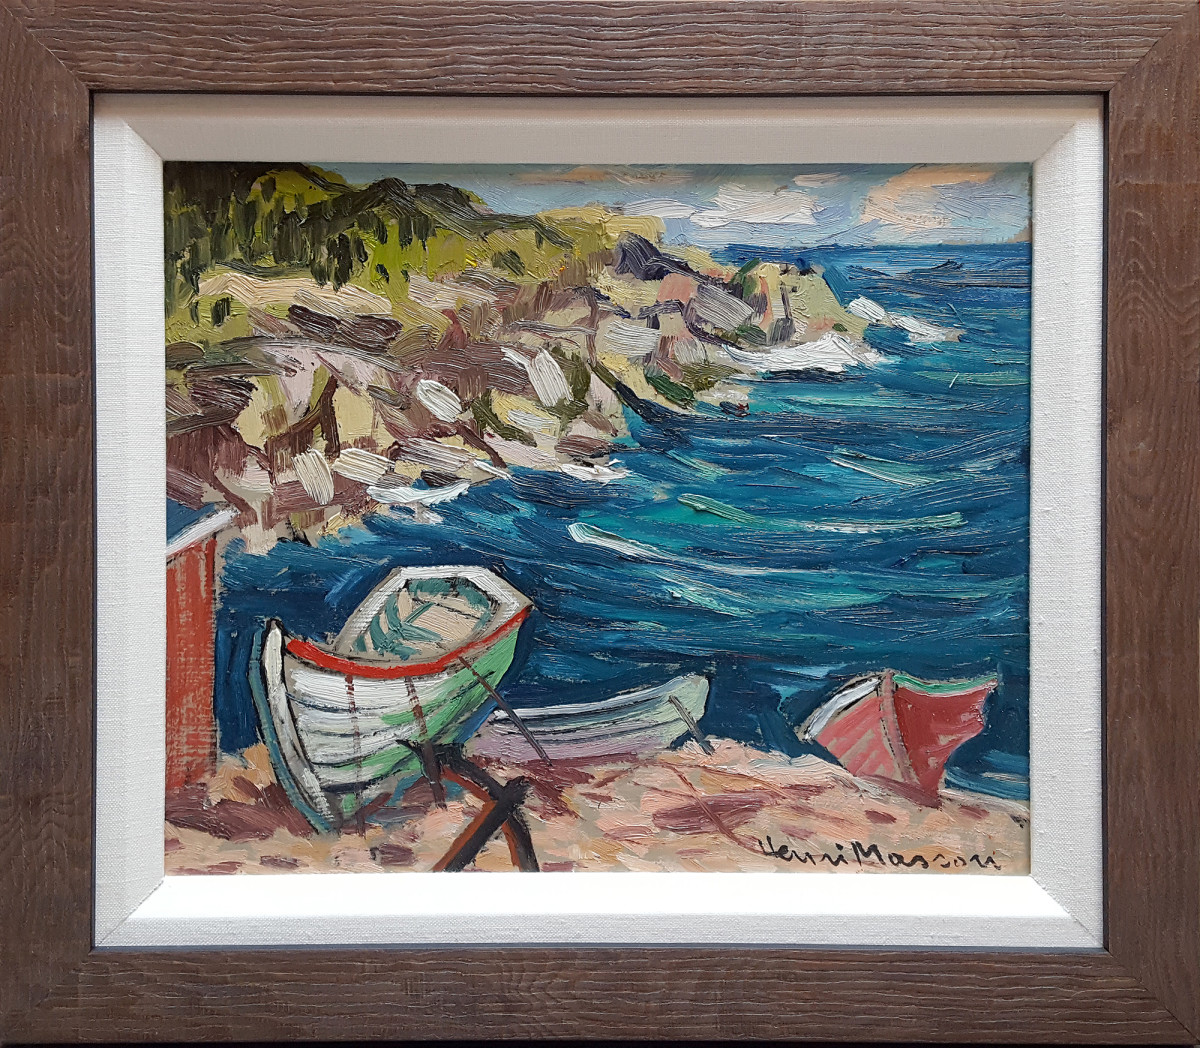 0812 - Portugal Cove by Henri Leopold Masson (1907-1966) 